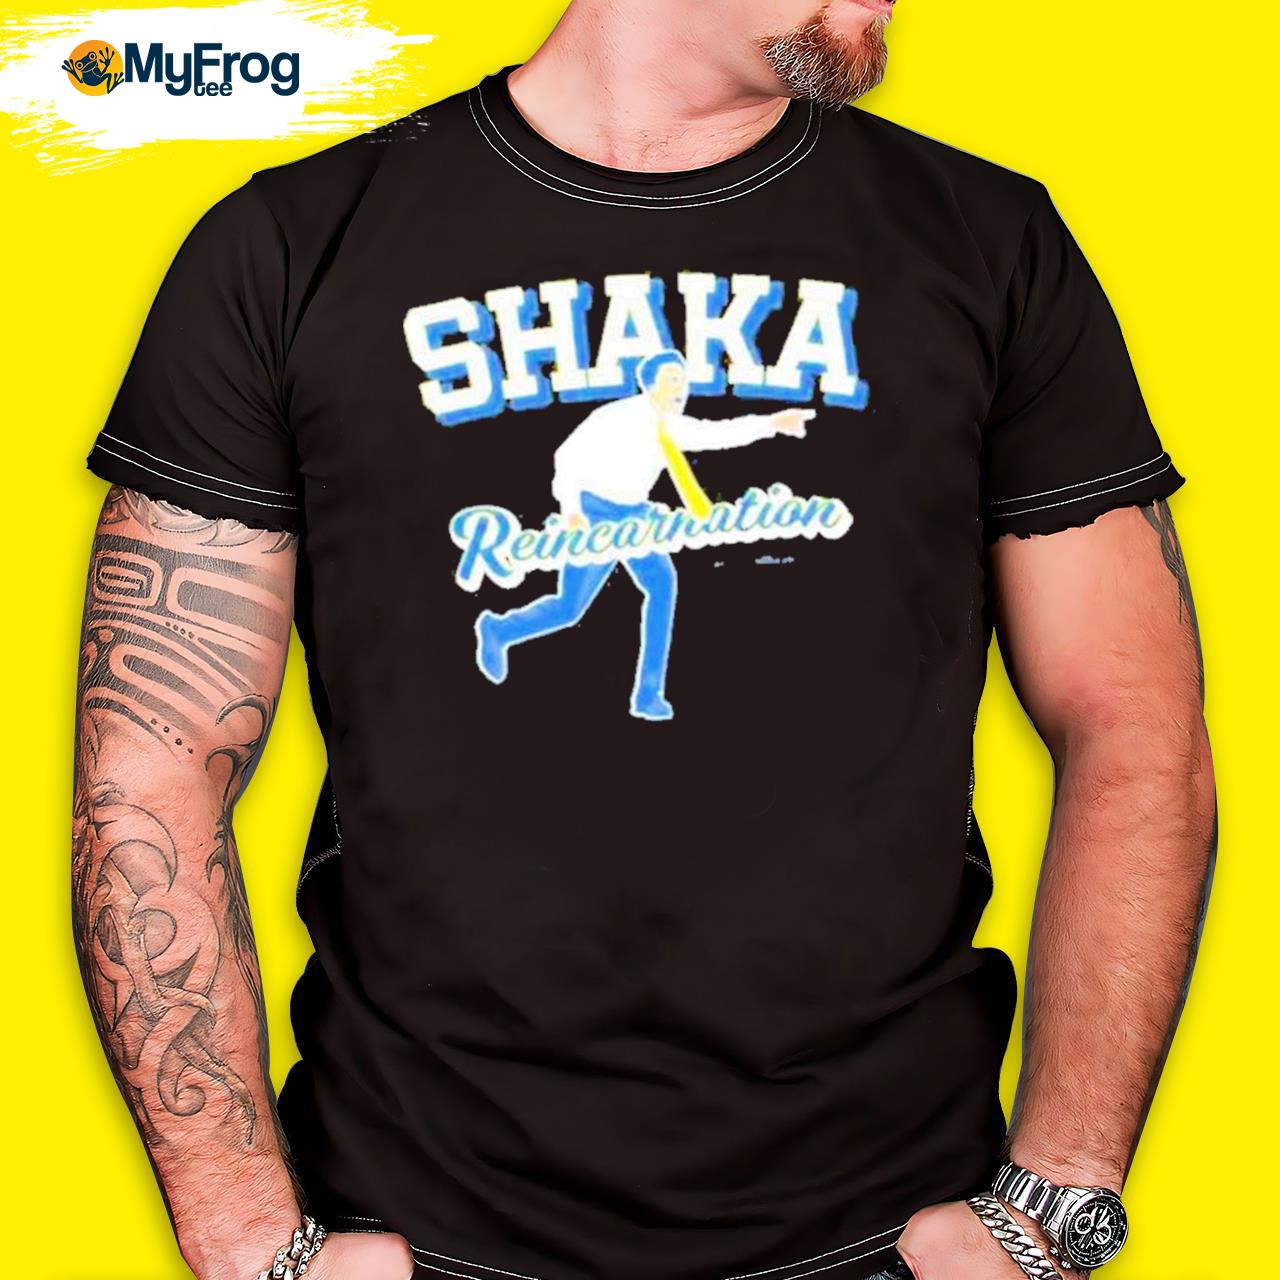 Official Shaka Reincarnation Shirt